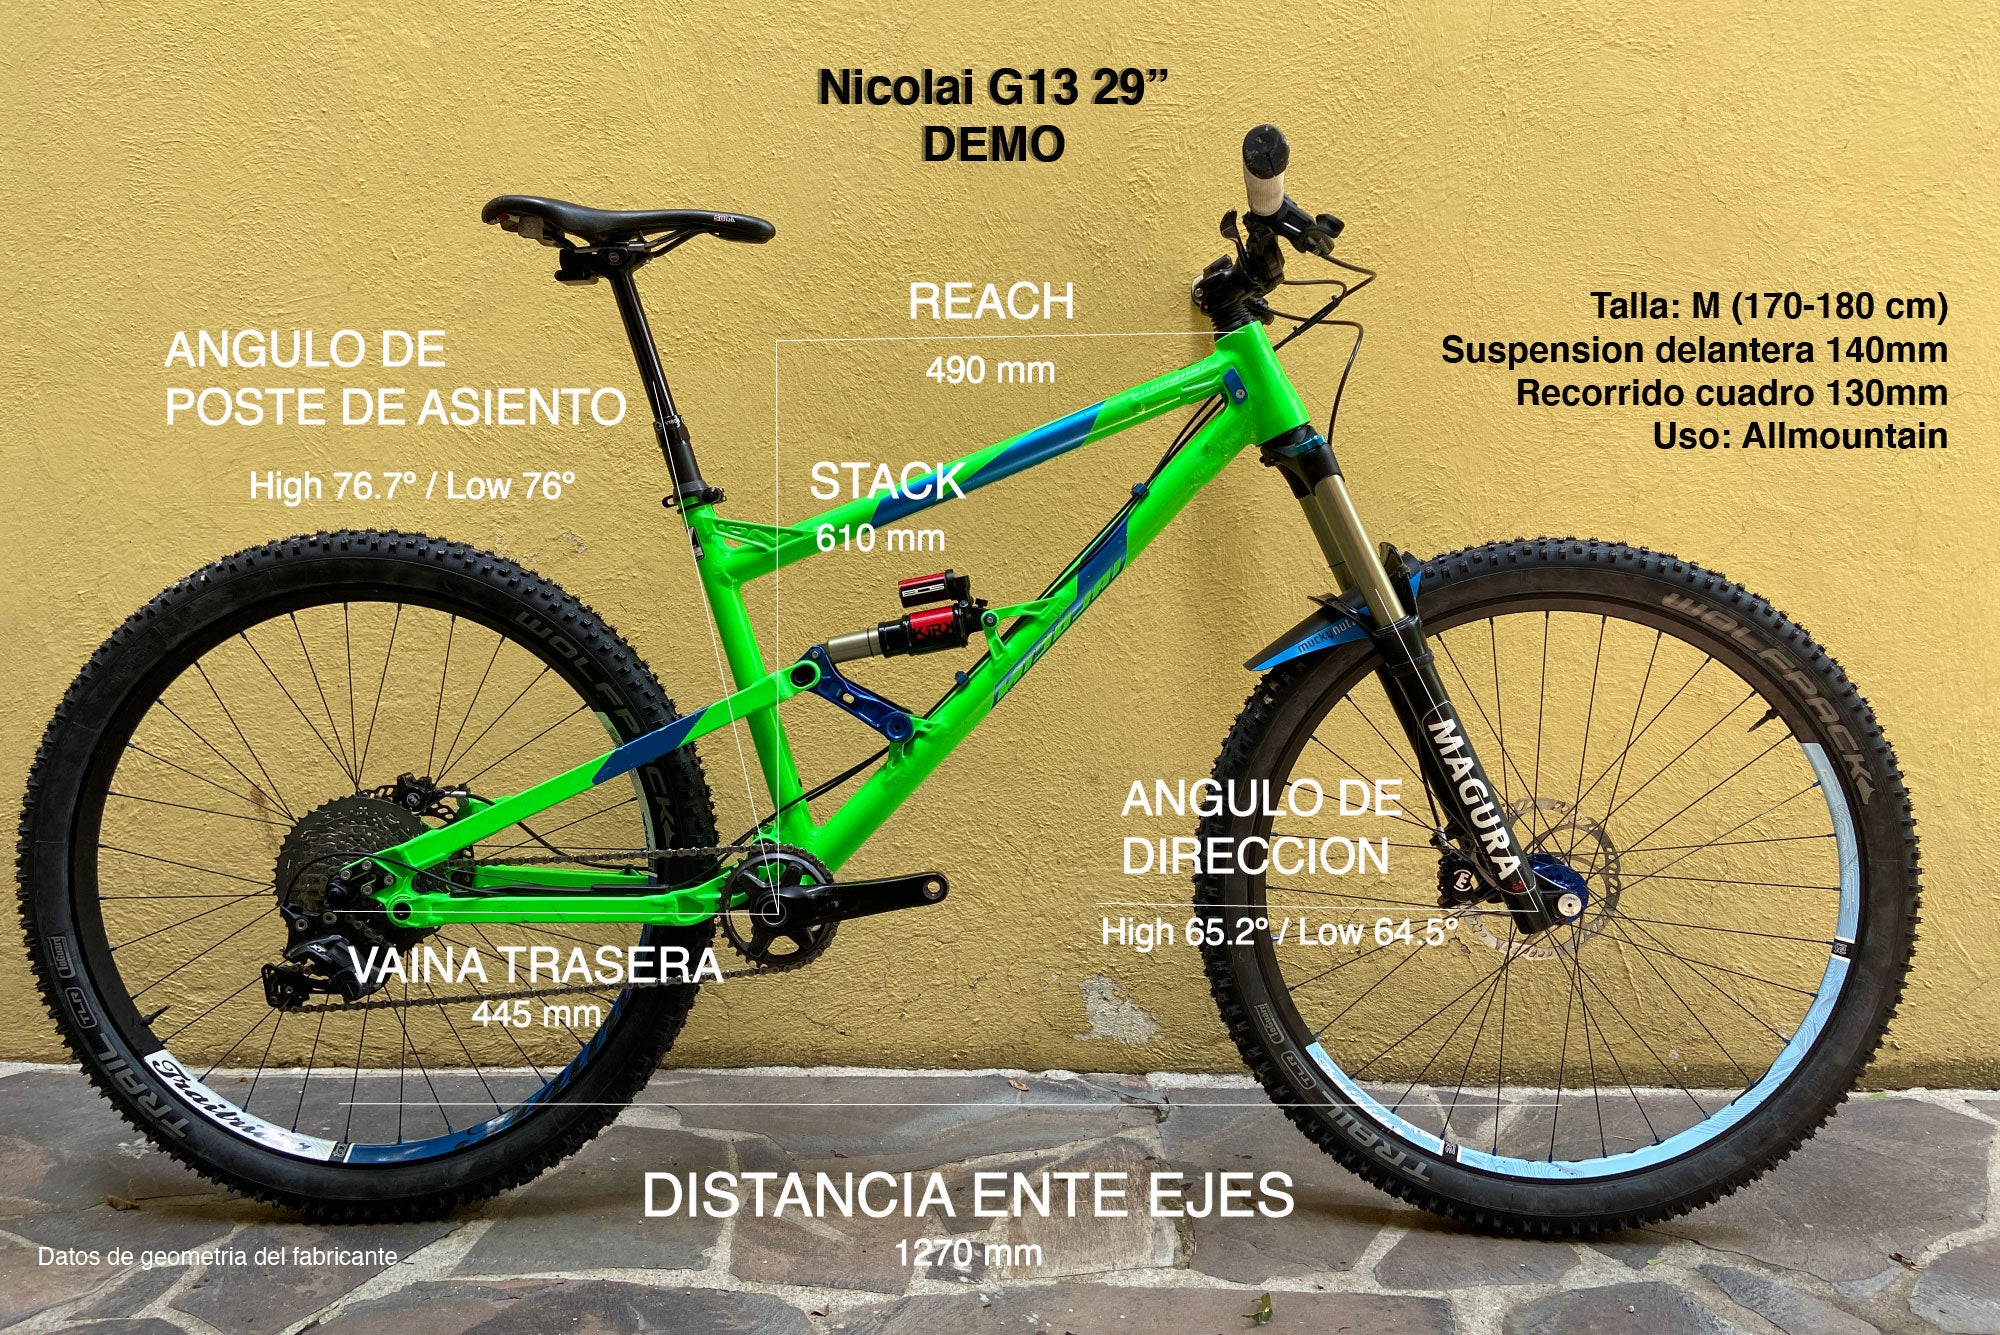 Bicicleta Nicolai G13 Demo talla M